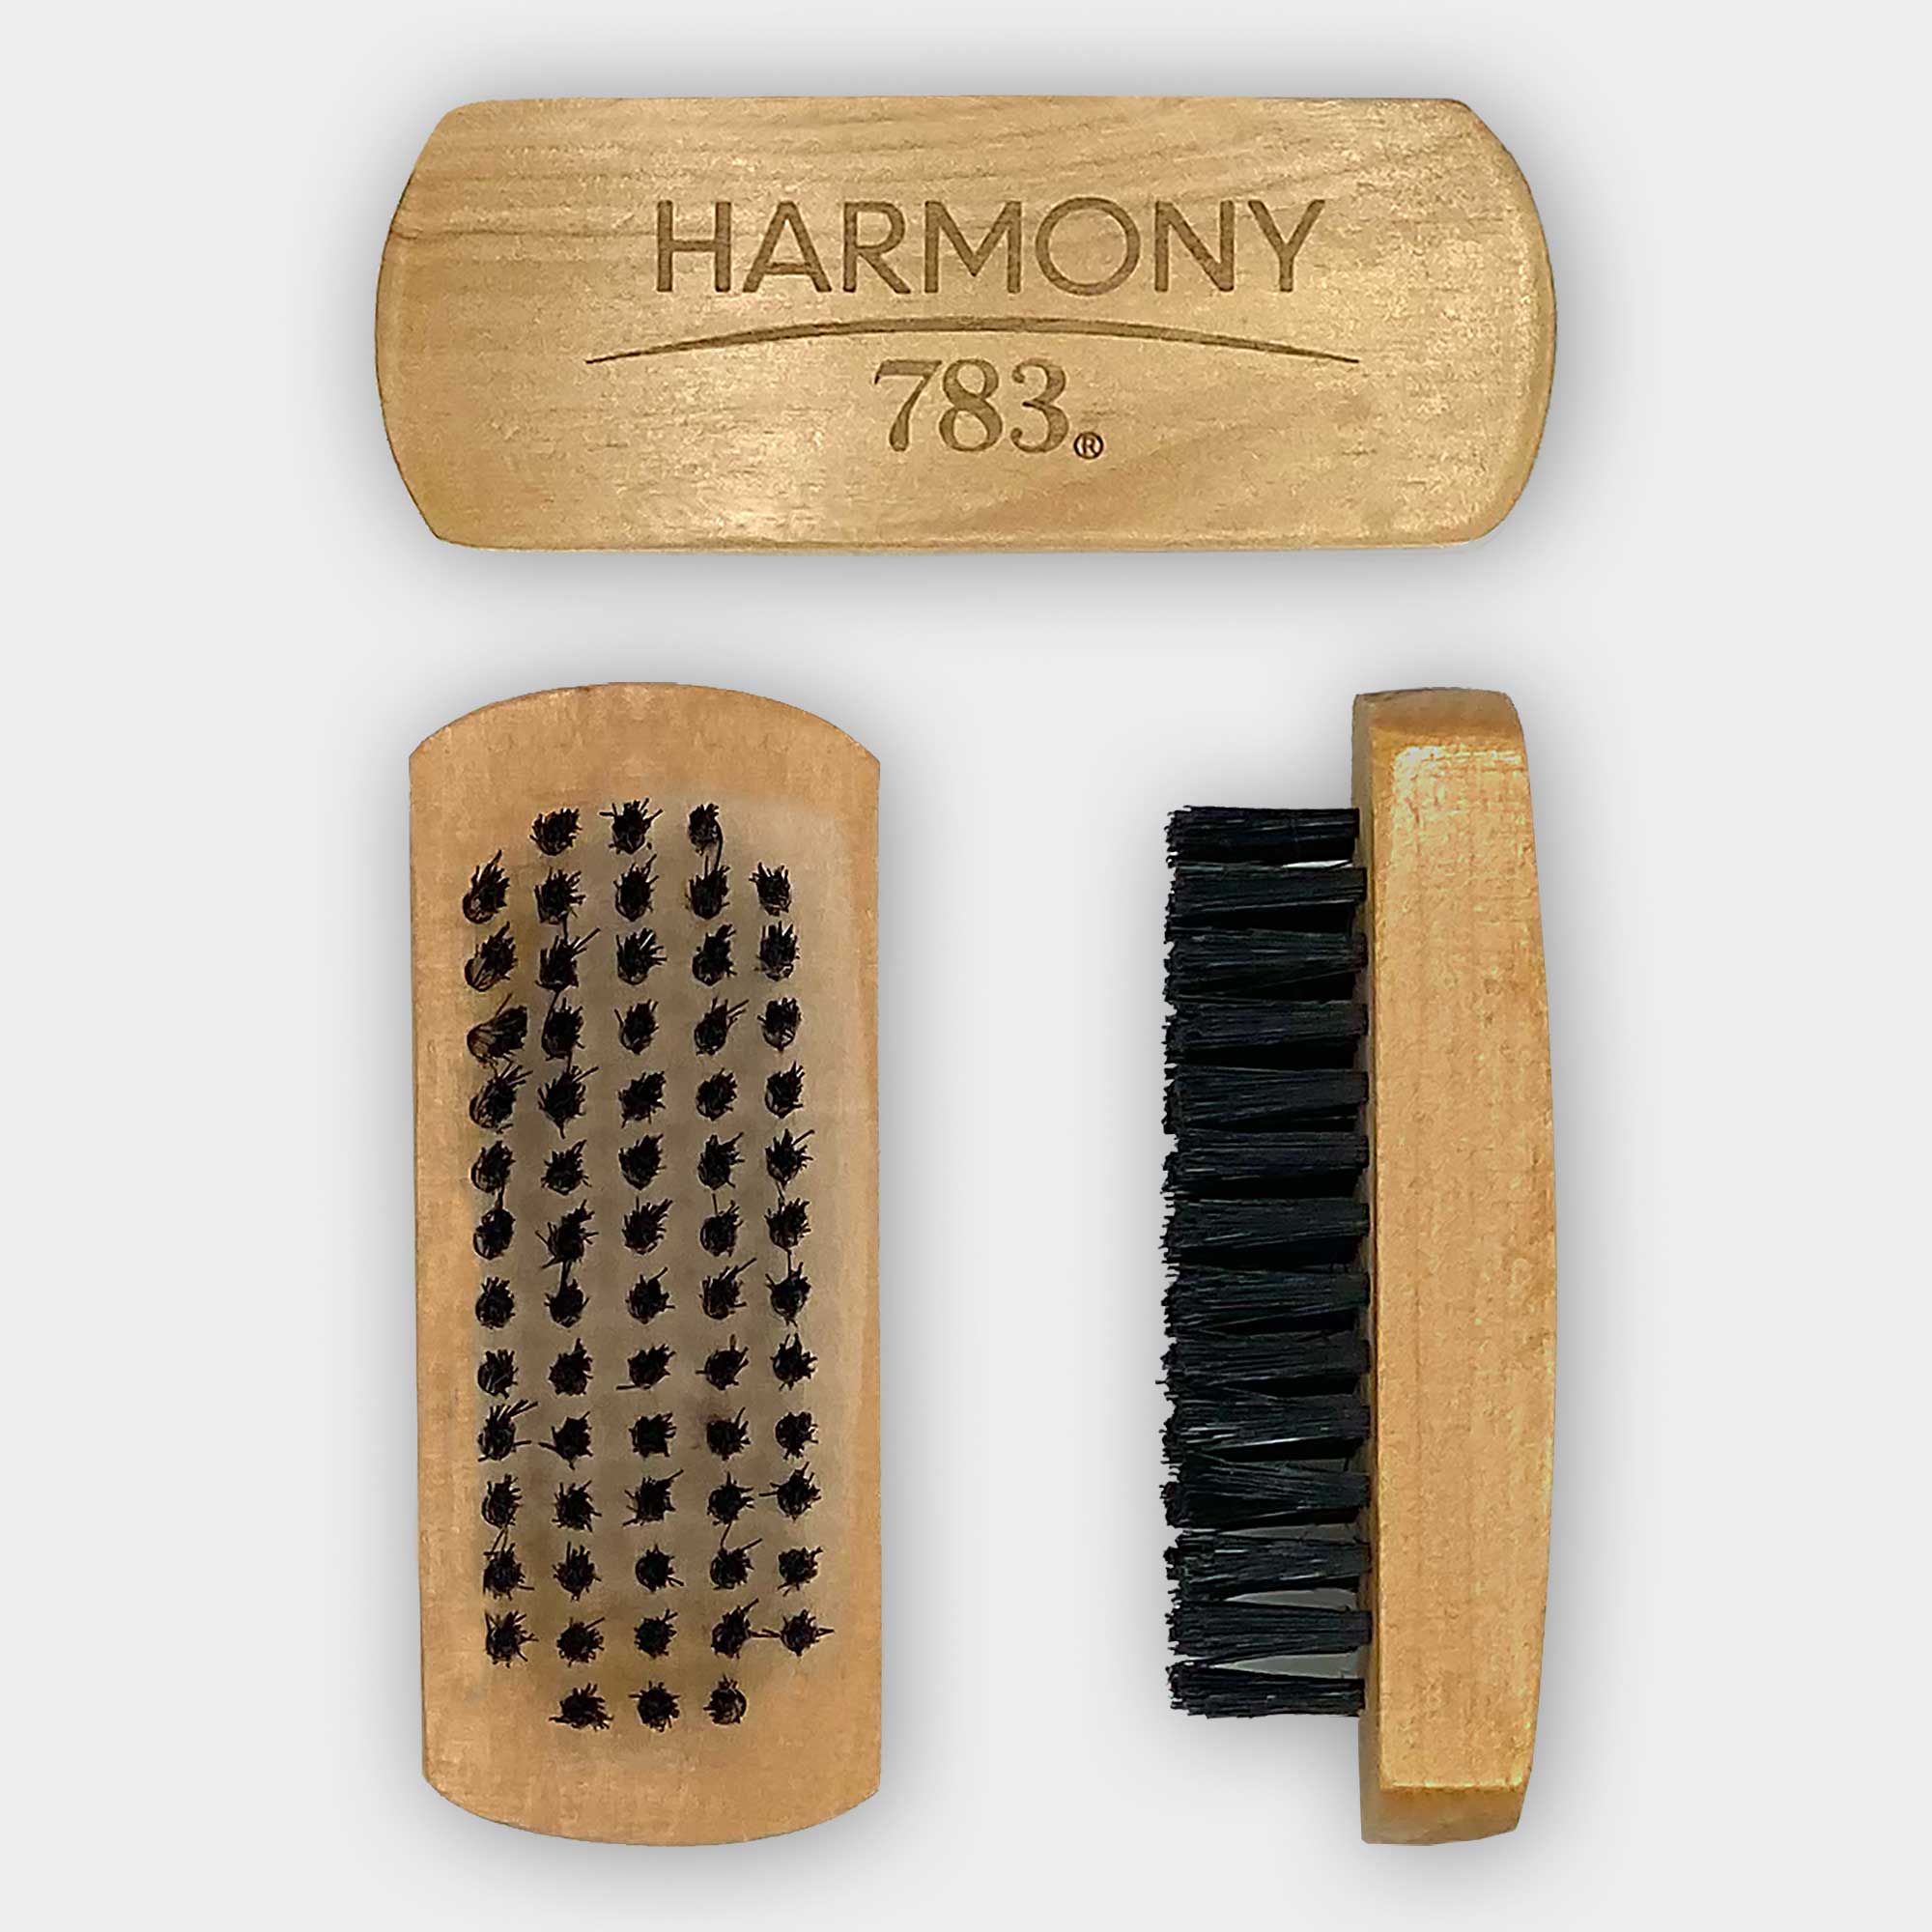 HARMONY 783 Suede Brush